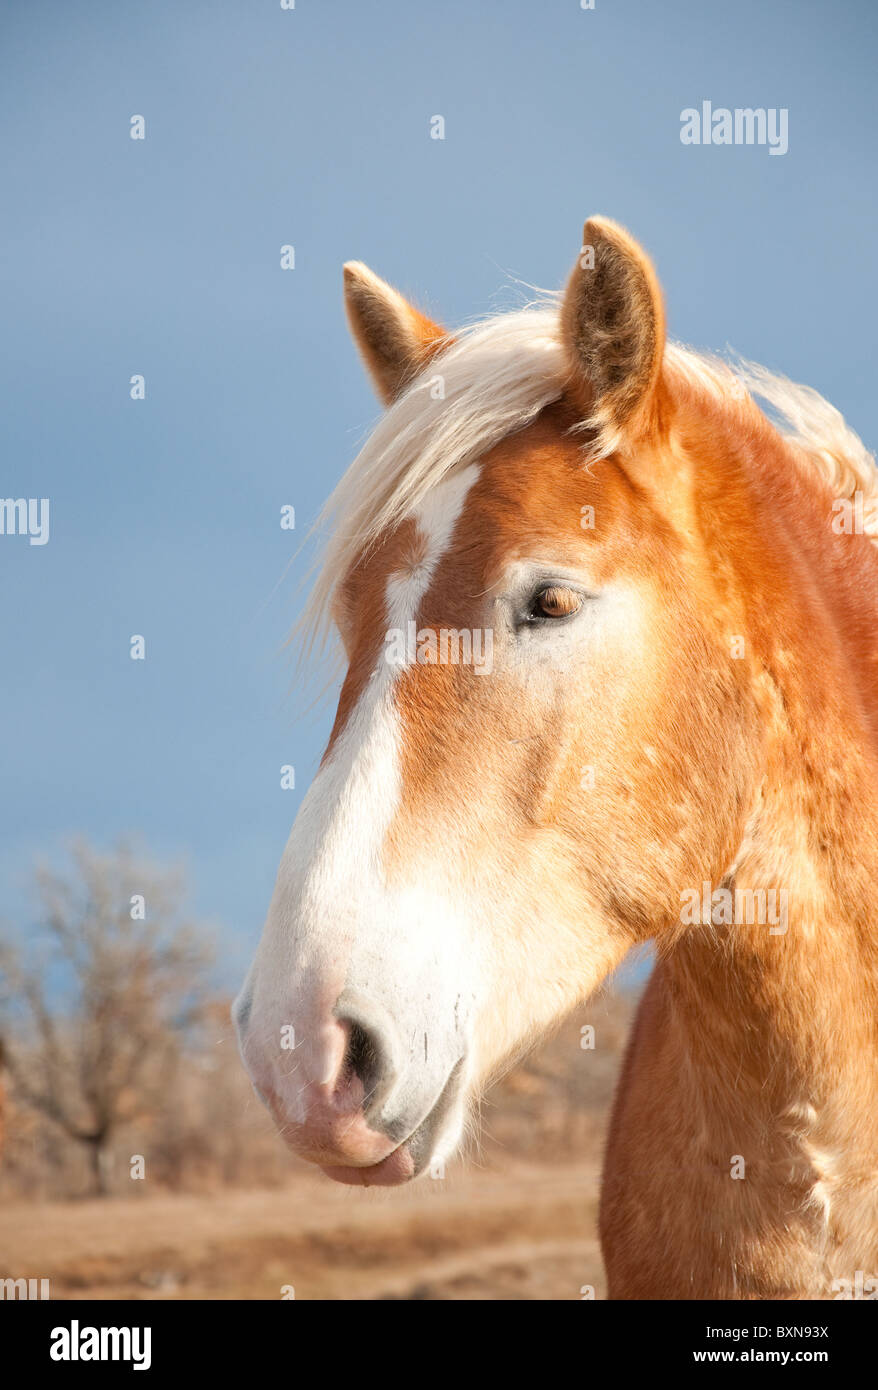 Belgian Draft horse against dark stormy skies in winter Stock Photo